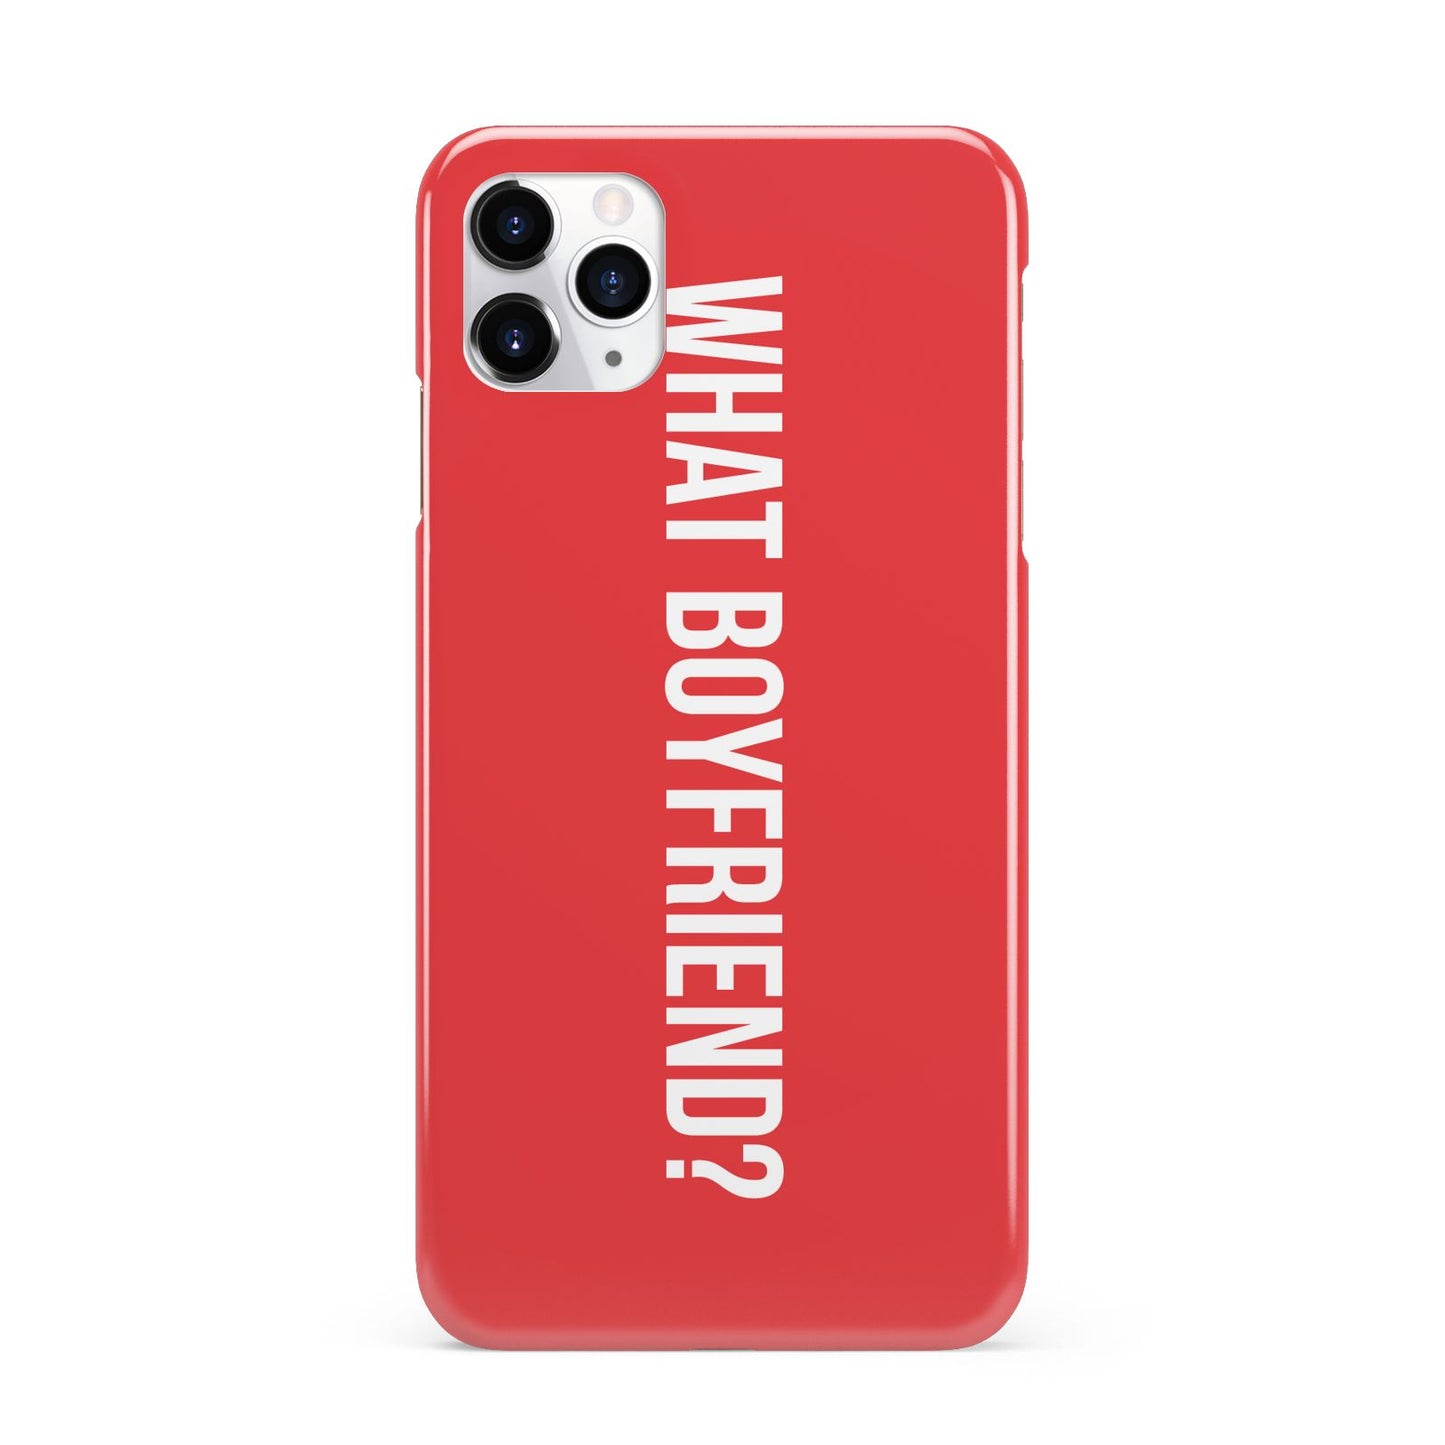 What Boyfriend iPhone 11 Pro Max 3D Snap Case